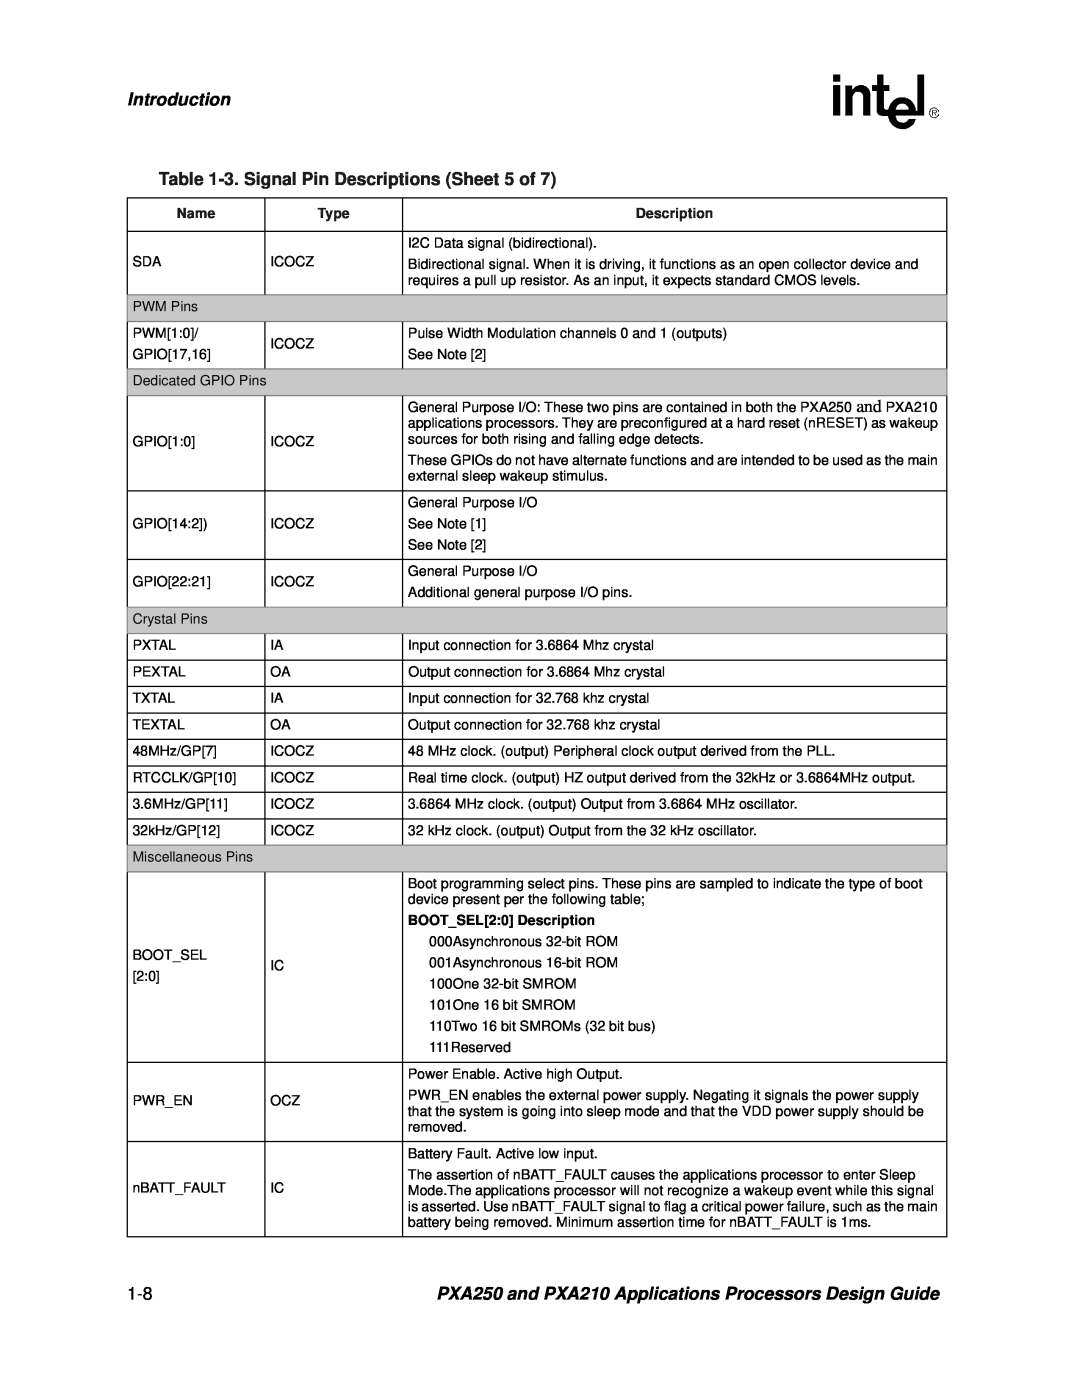 Intel PXA250 and PXA210 manual Introduction, 3. Signal Pin Descriptions Sheet 5 of, BOOTSEL20 Description 